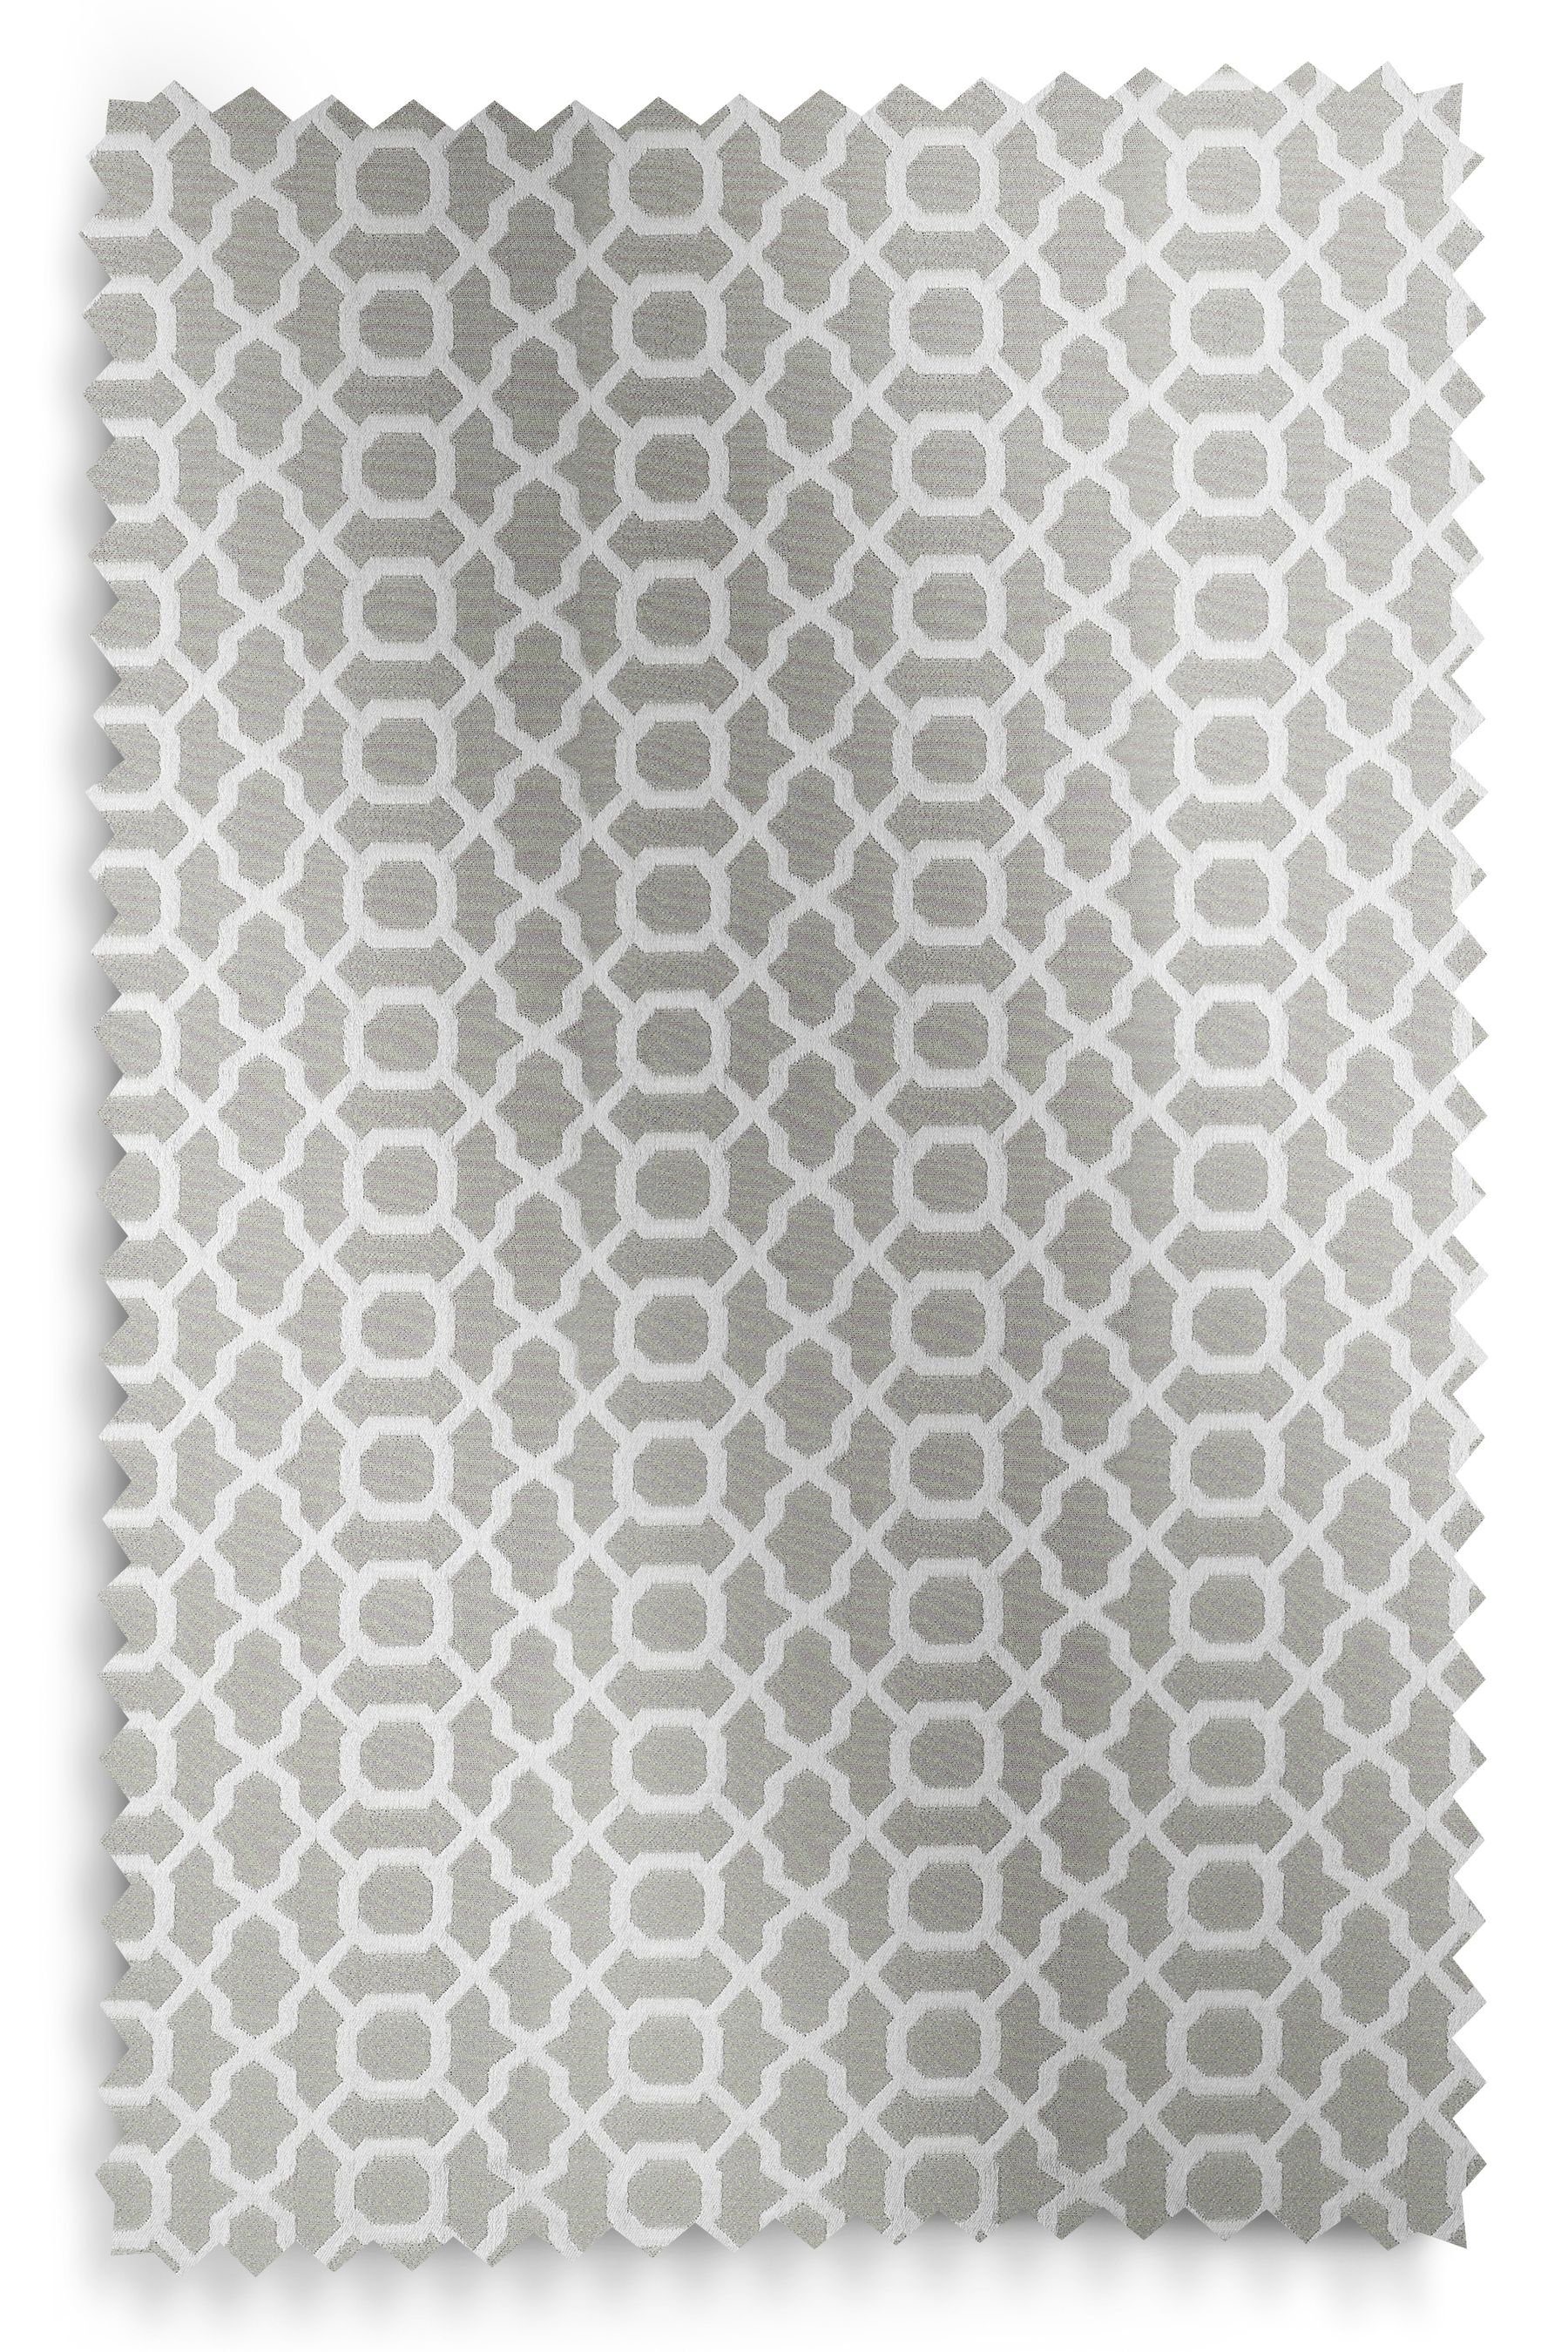 Next, Gewebte Muster, Vorhänge Silver St) Light Grey geometrischem mit (2 Vorhang